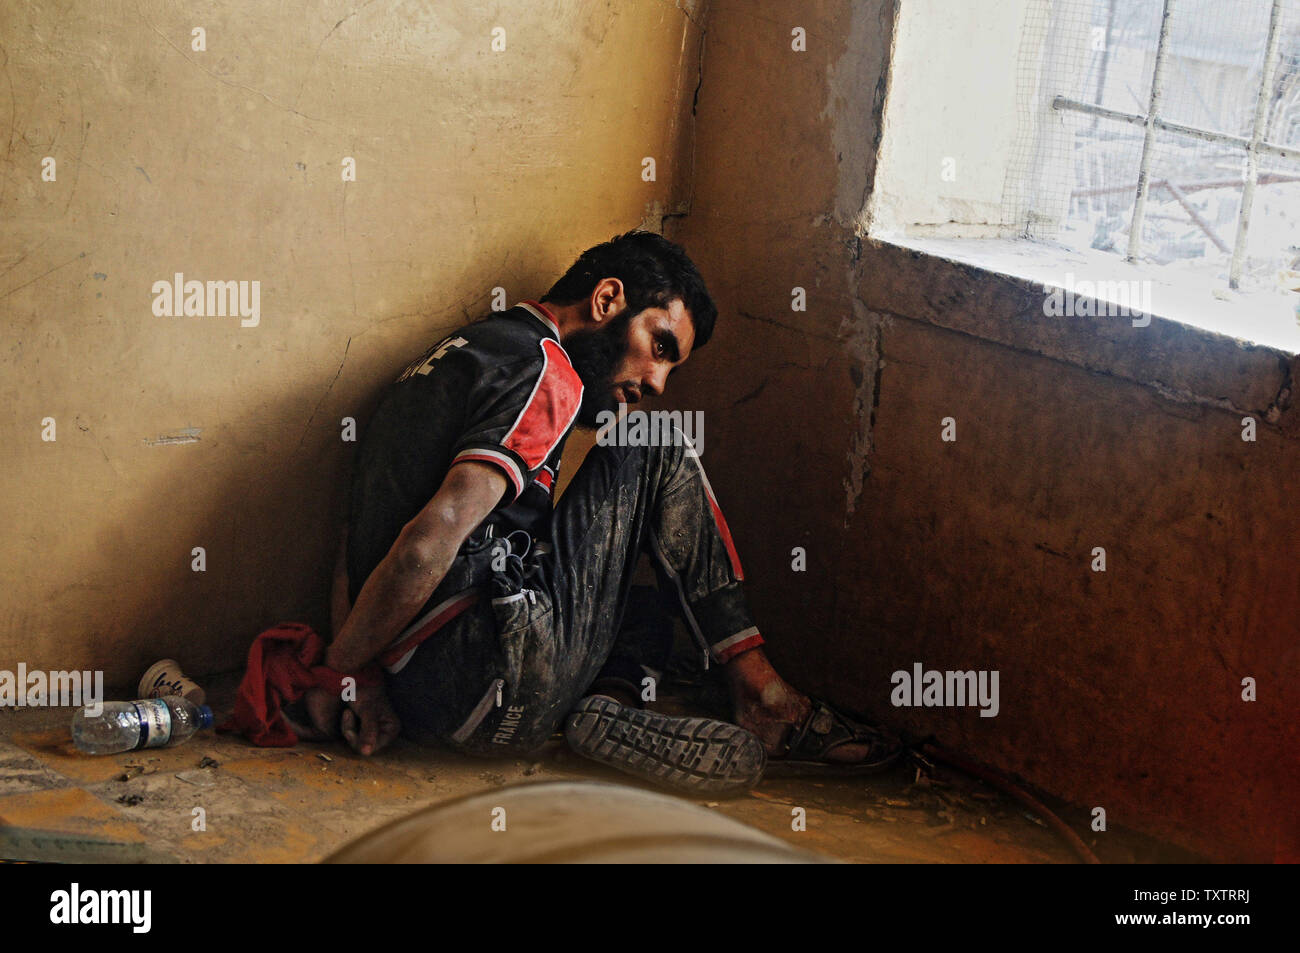 Ein vermuteter Islamischen Staat Fighter sitzt in einem Keller in der alten Stadt von Mosul, Irak, 10. Juli 2017. Irak verkündete einen endgültigen Sieg in den fast neun Monate offensive Mossul von Dschihadisten zu wiederholen, wie Feiern unter der Polizei in der Stadt brach. Foto von Hana Noori/UPI Stockfoto